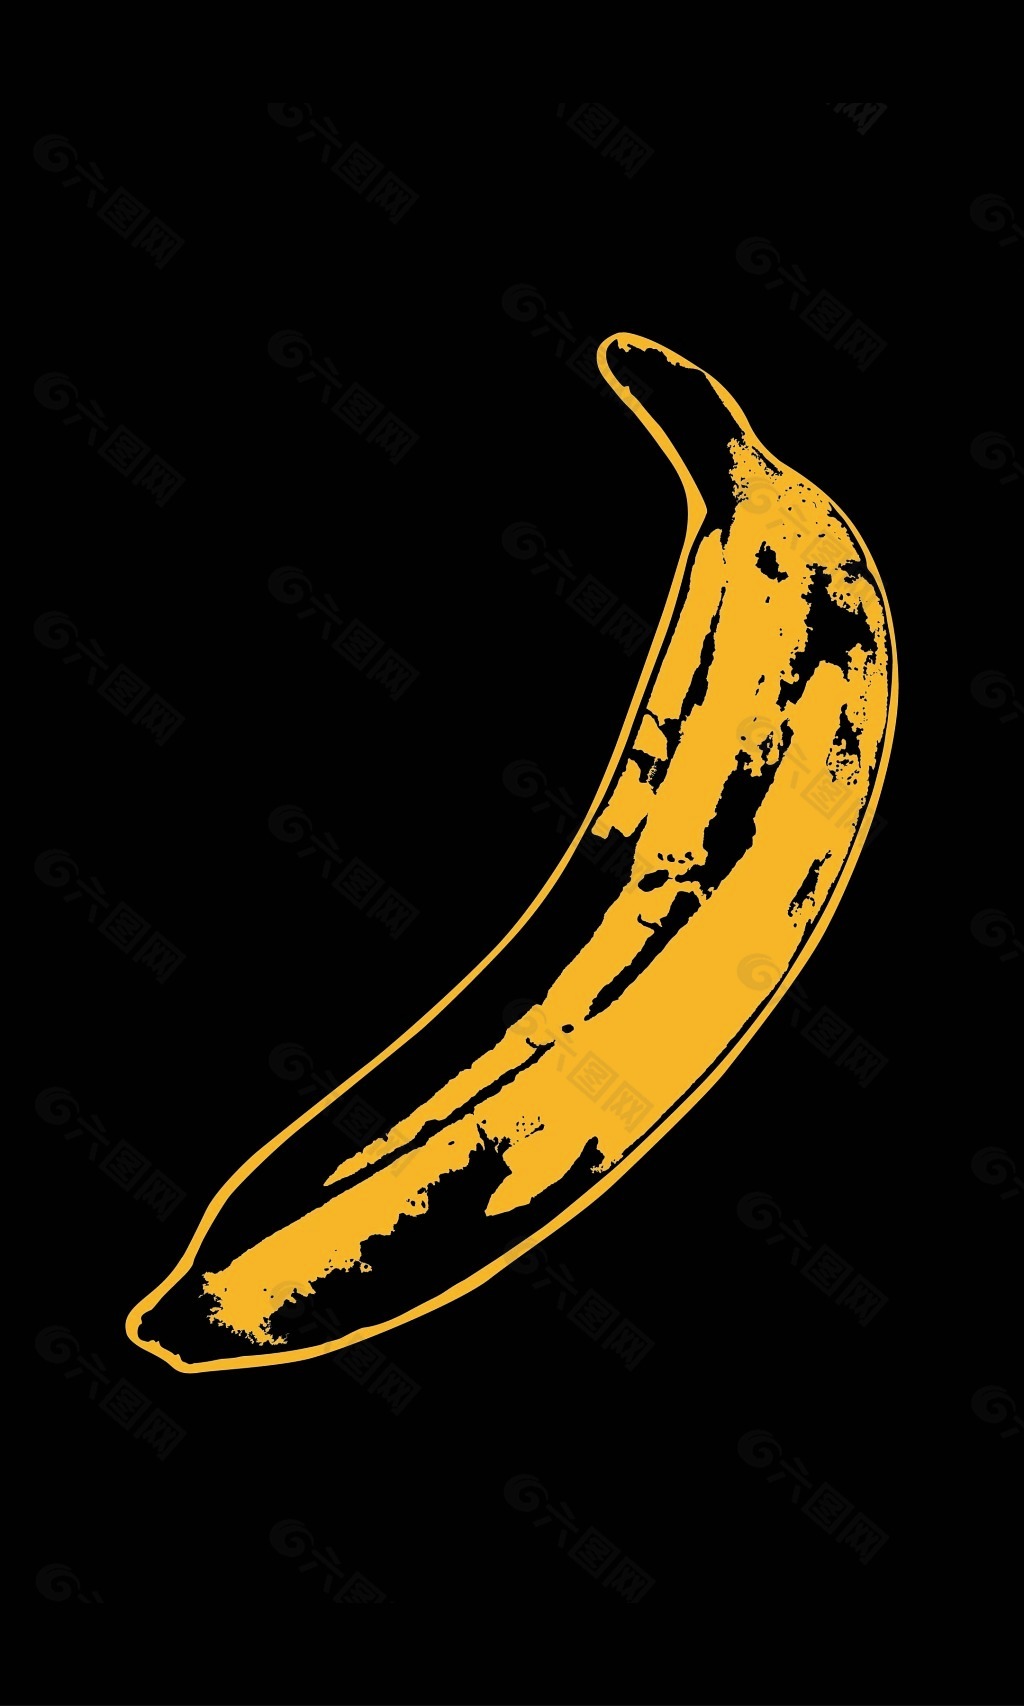 香蕉壁纸竖屏图片